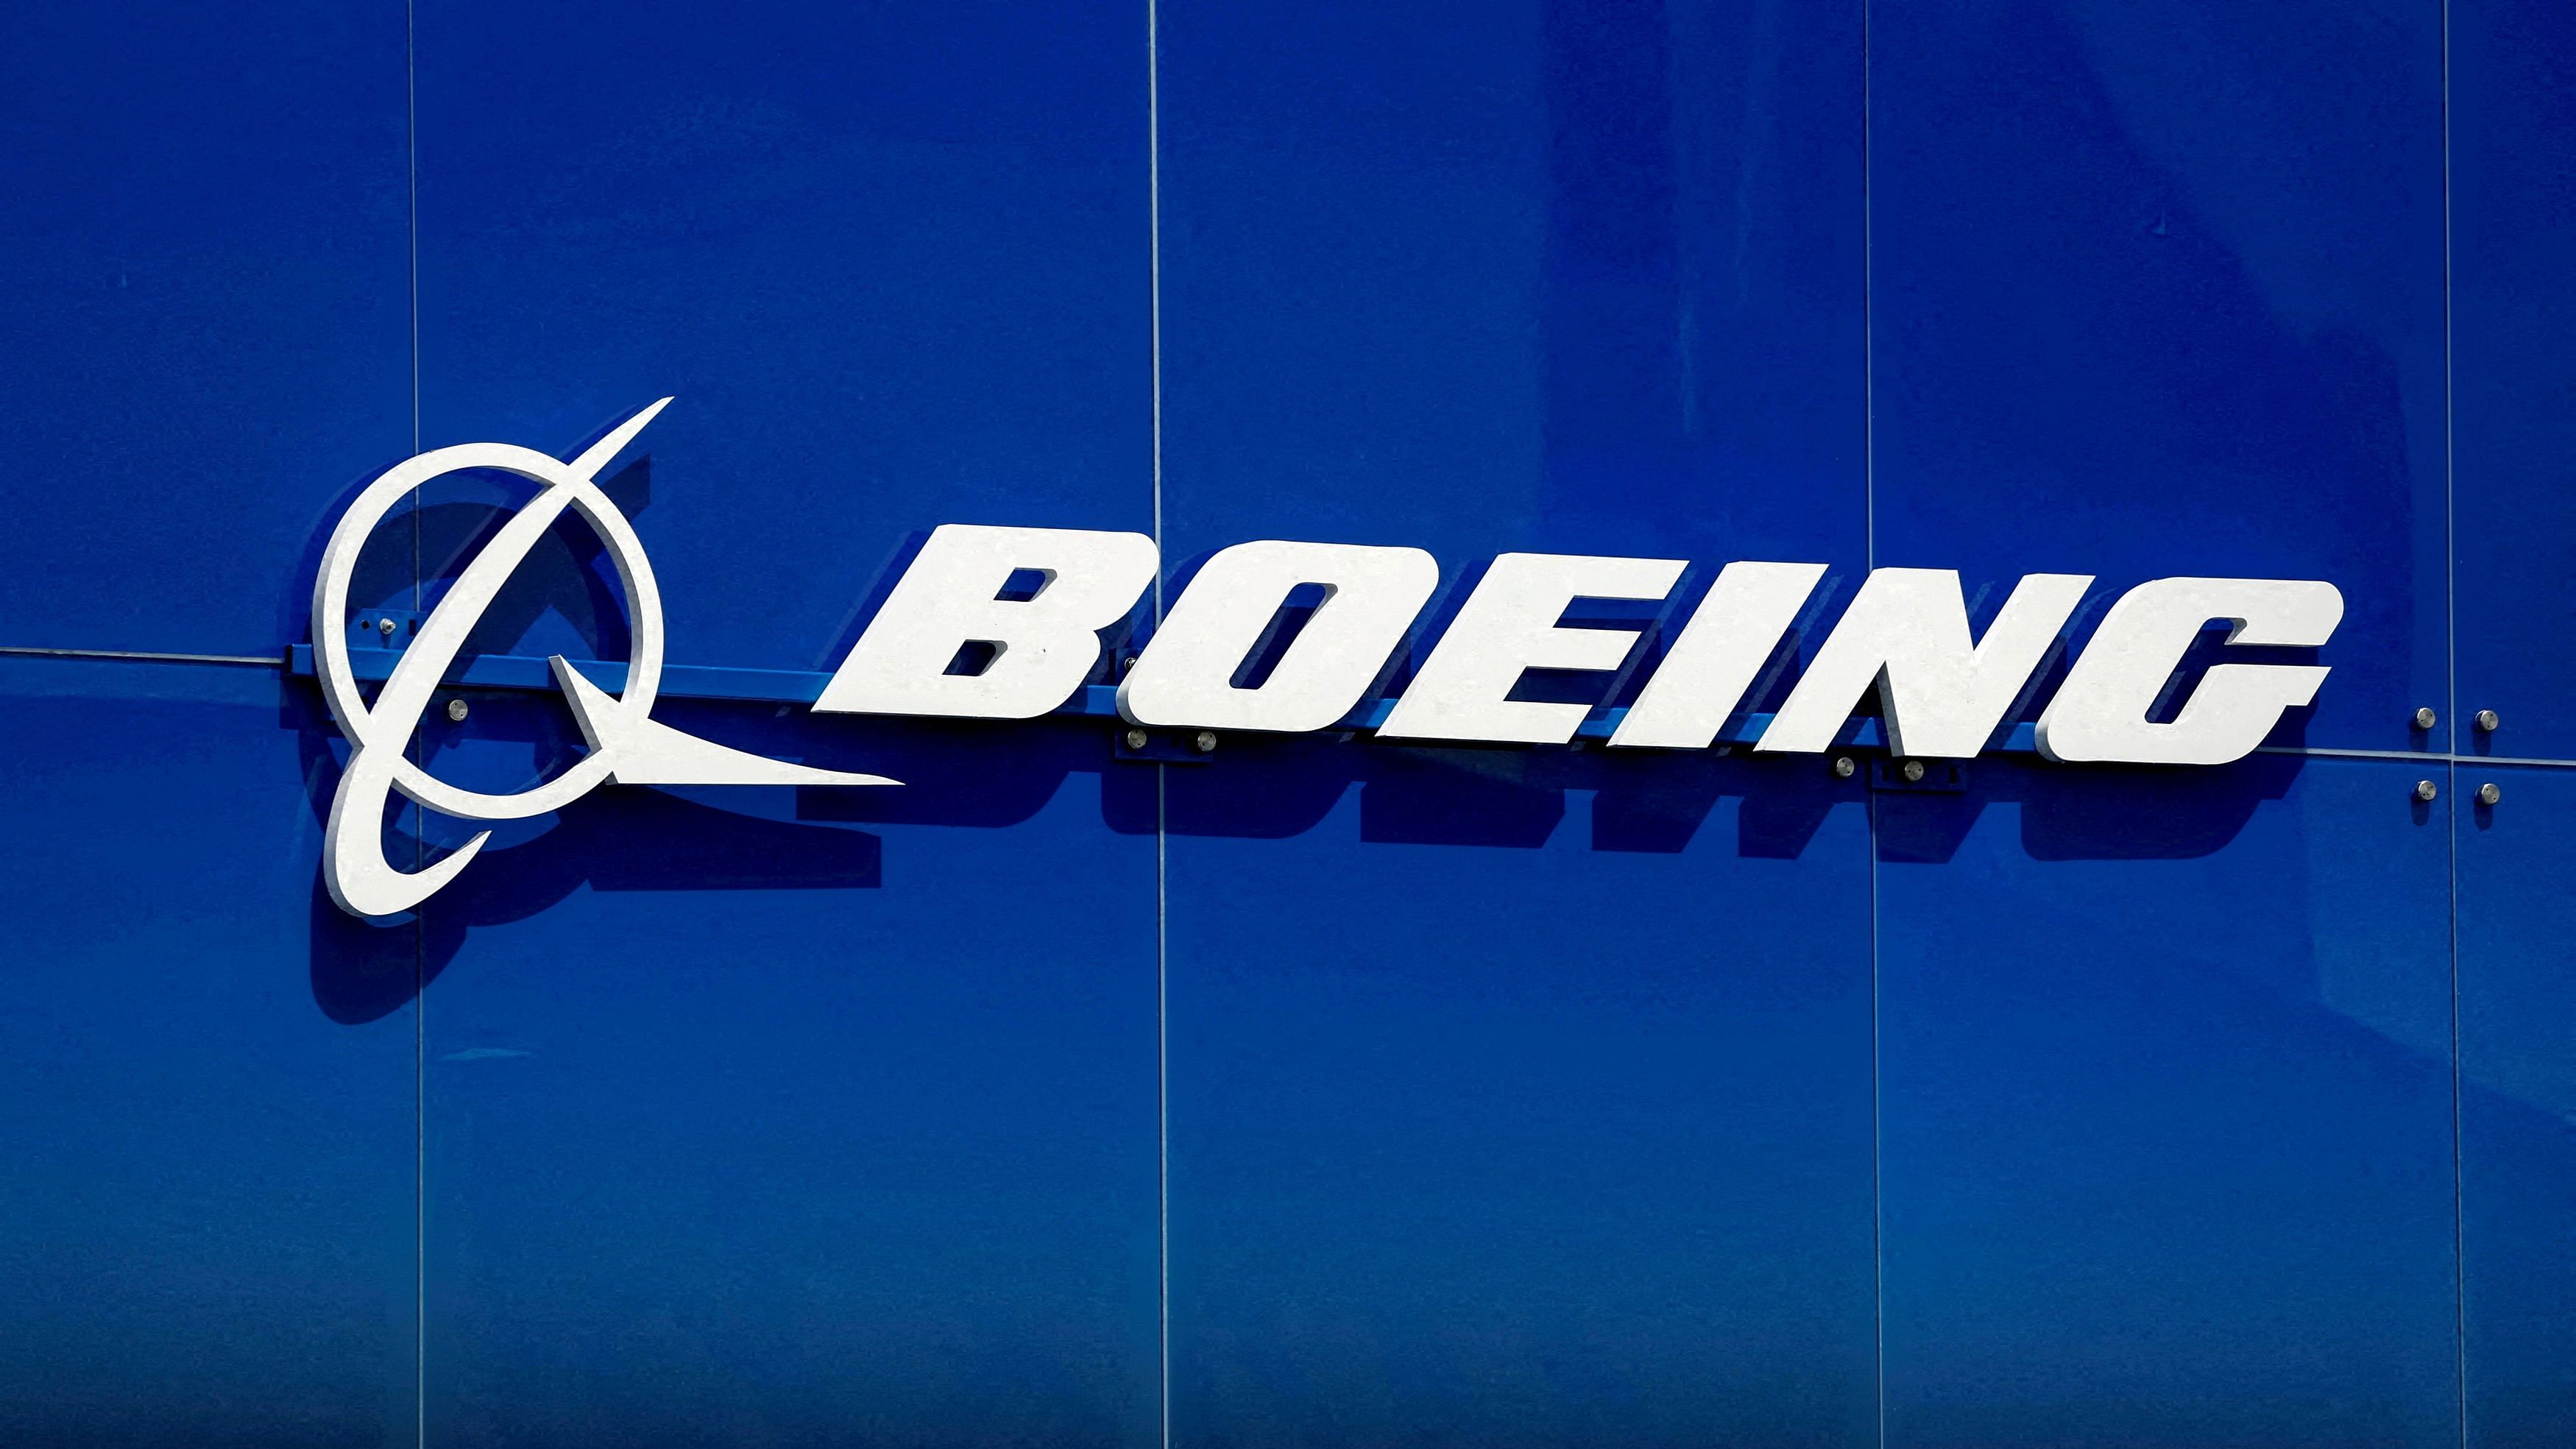 <div class="paragraphs"><p>The Boeing logo.</p></div>